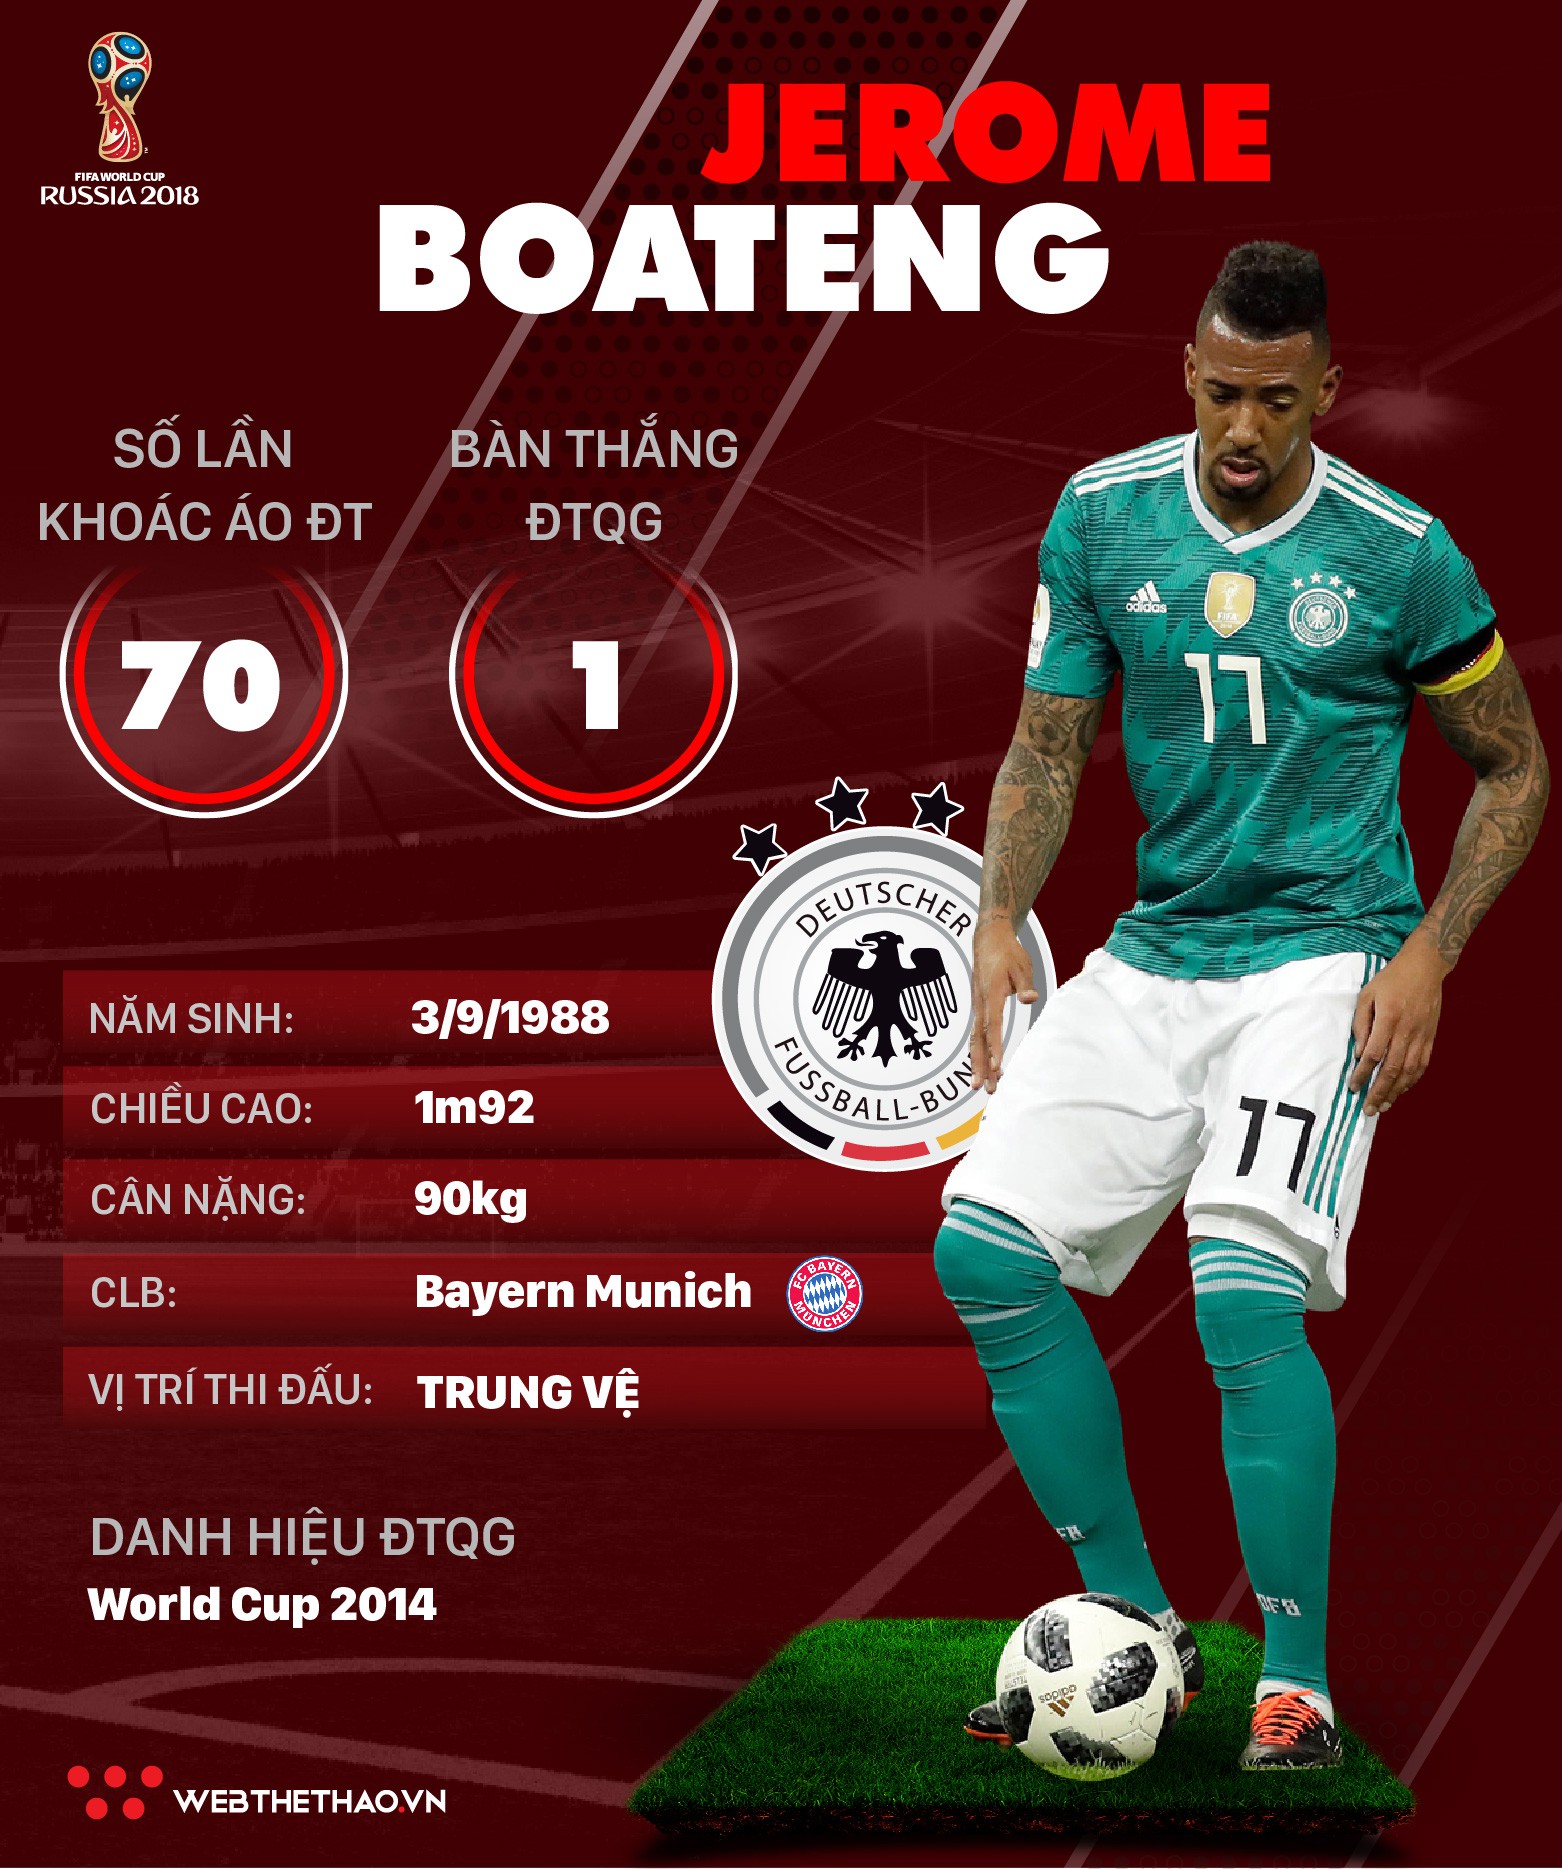 Thông tin cầu thủ Jerome Boateng của ĐT Đức dự World Cup 2018